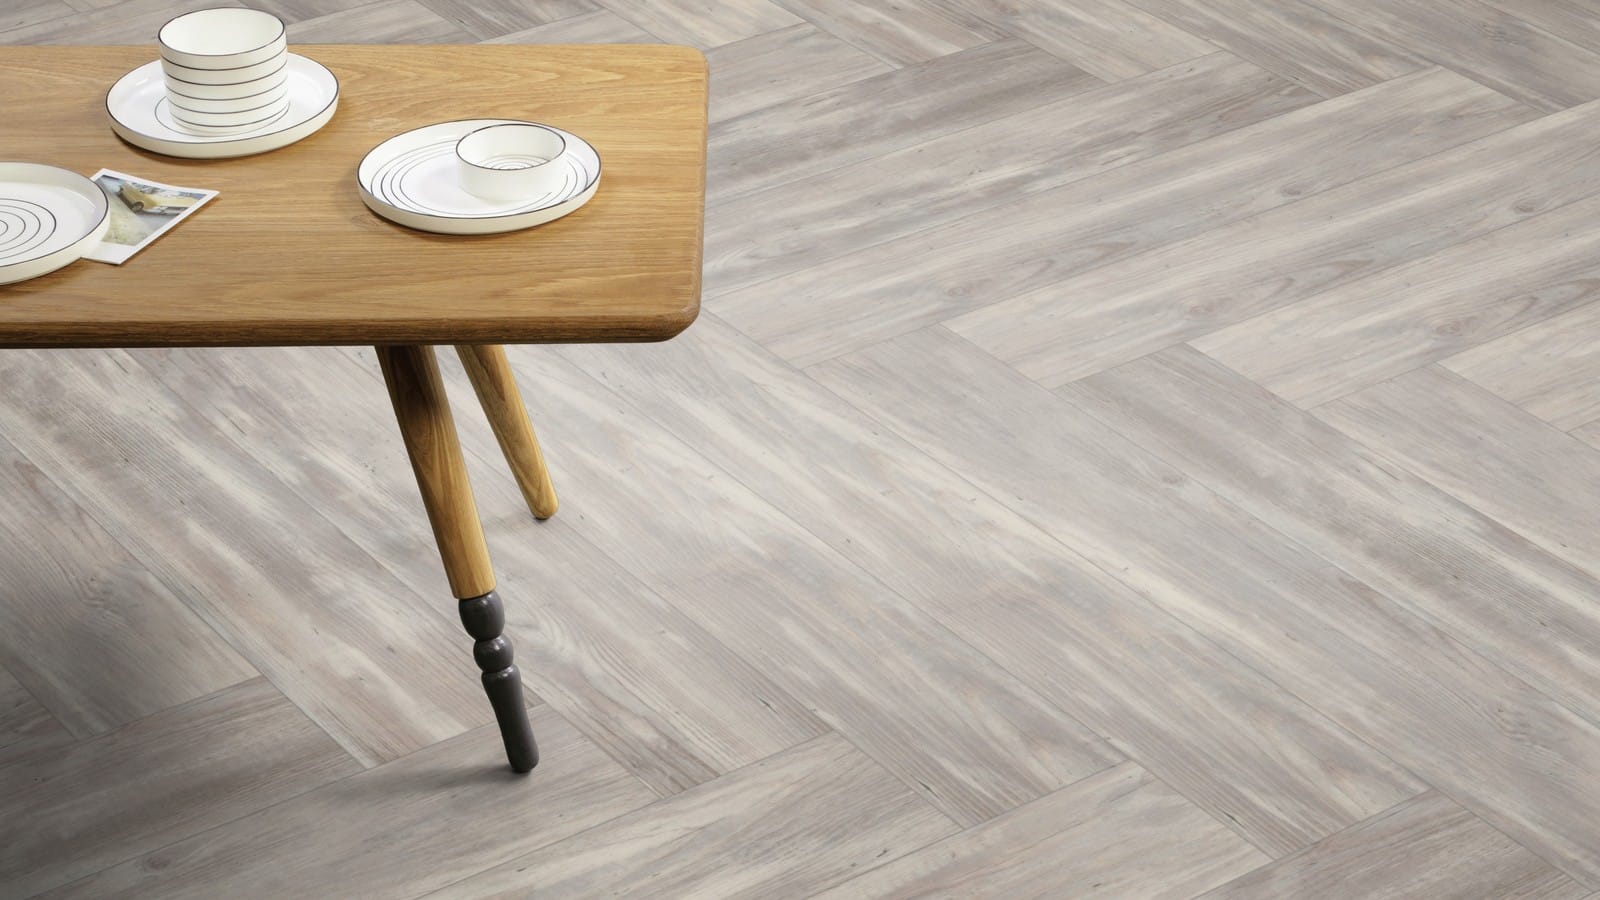 The Herringbone Plank design of Halo Pine luxury vinyl tile by Amtico